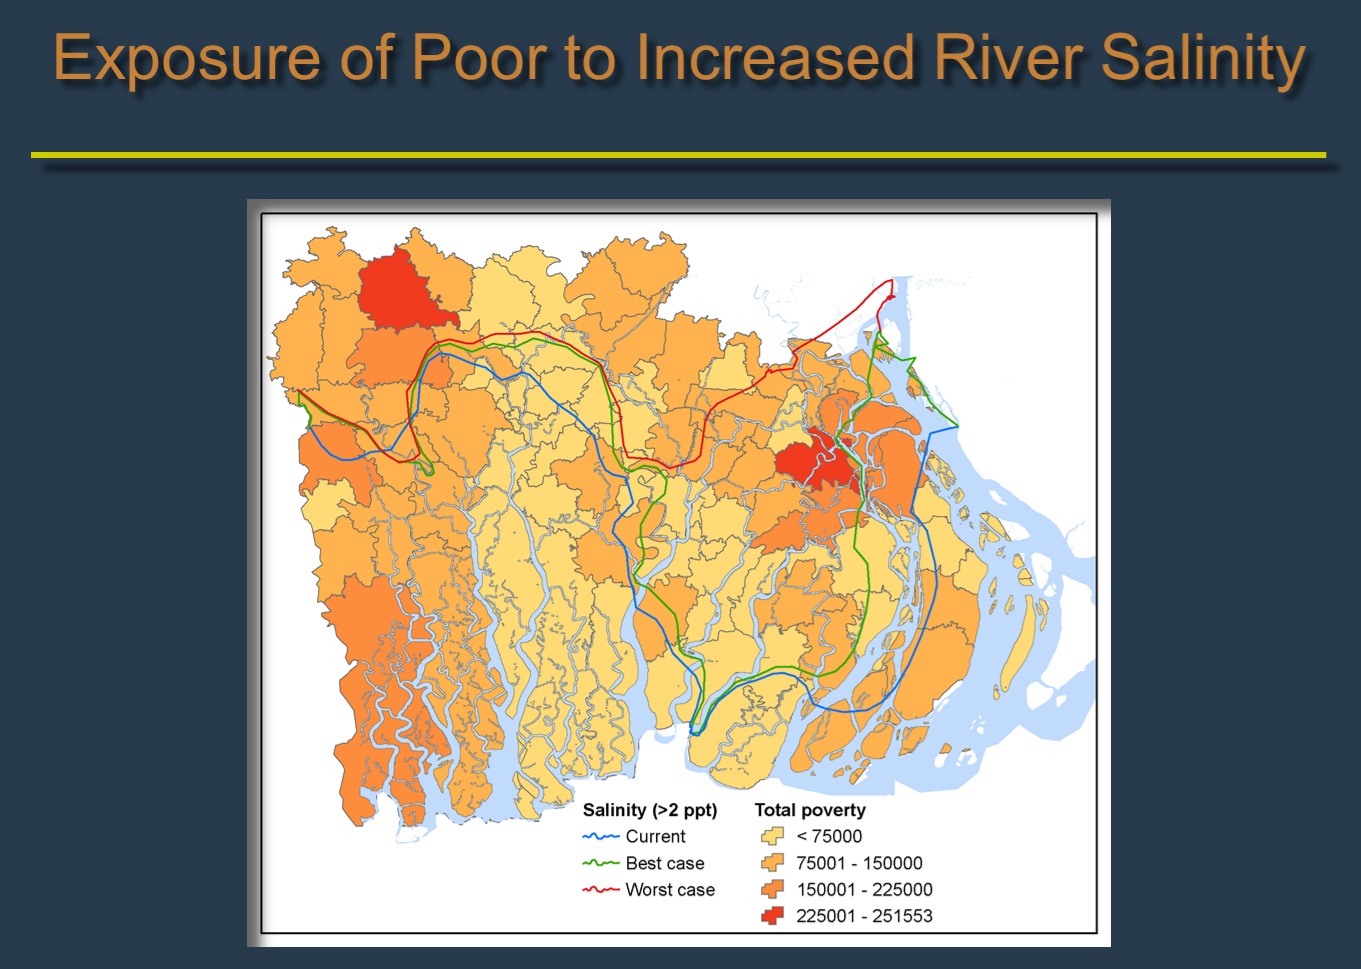 Exposure of poor to increased river salinity